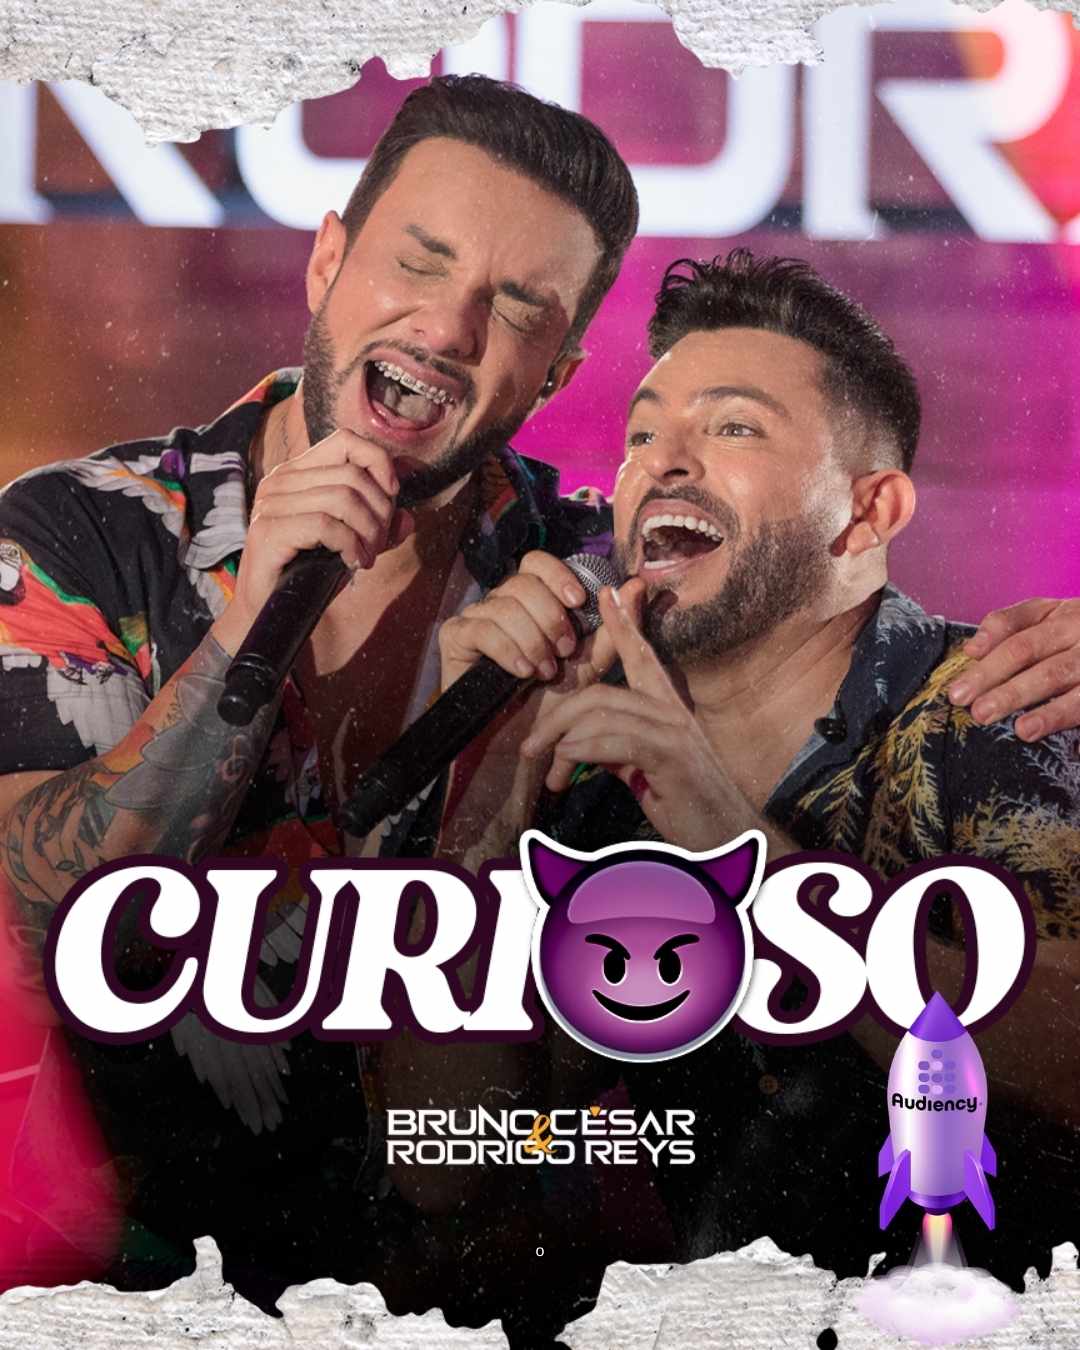 Bruno César e Rodrigo Reys lançam "Curioso" nas rádios do Brasil